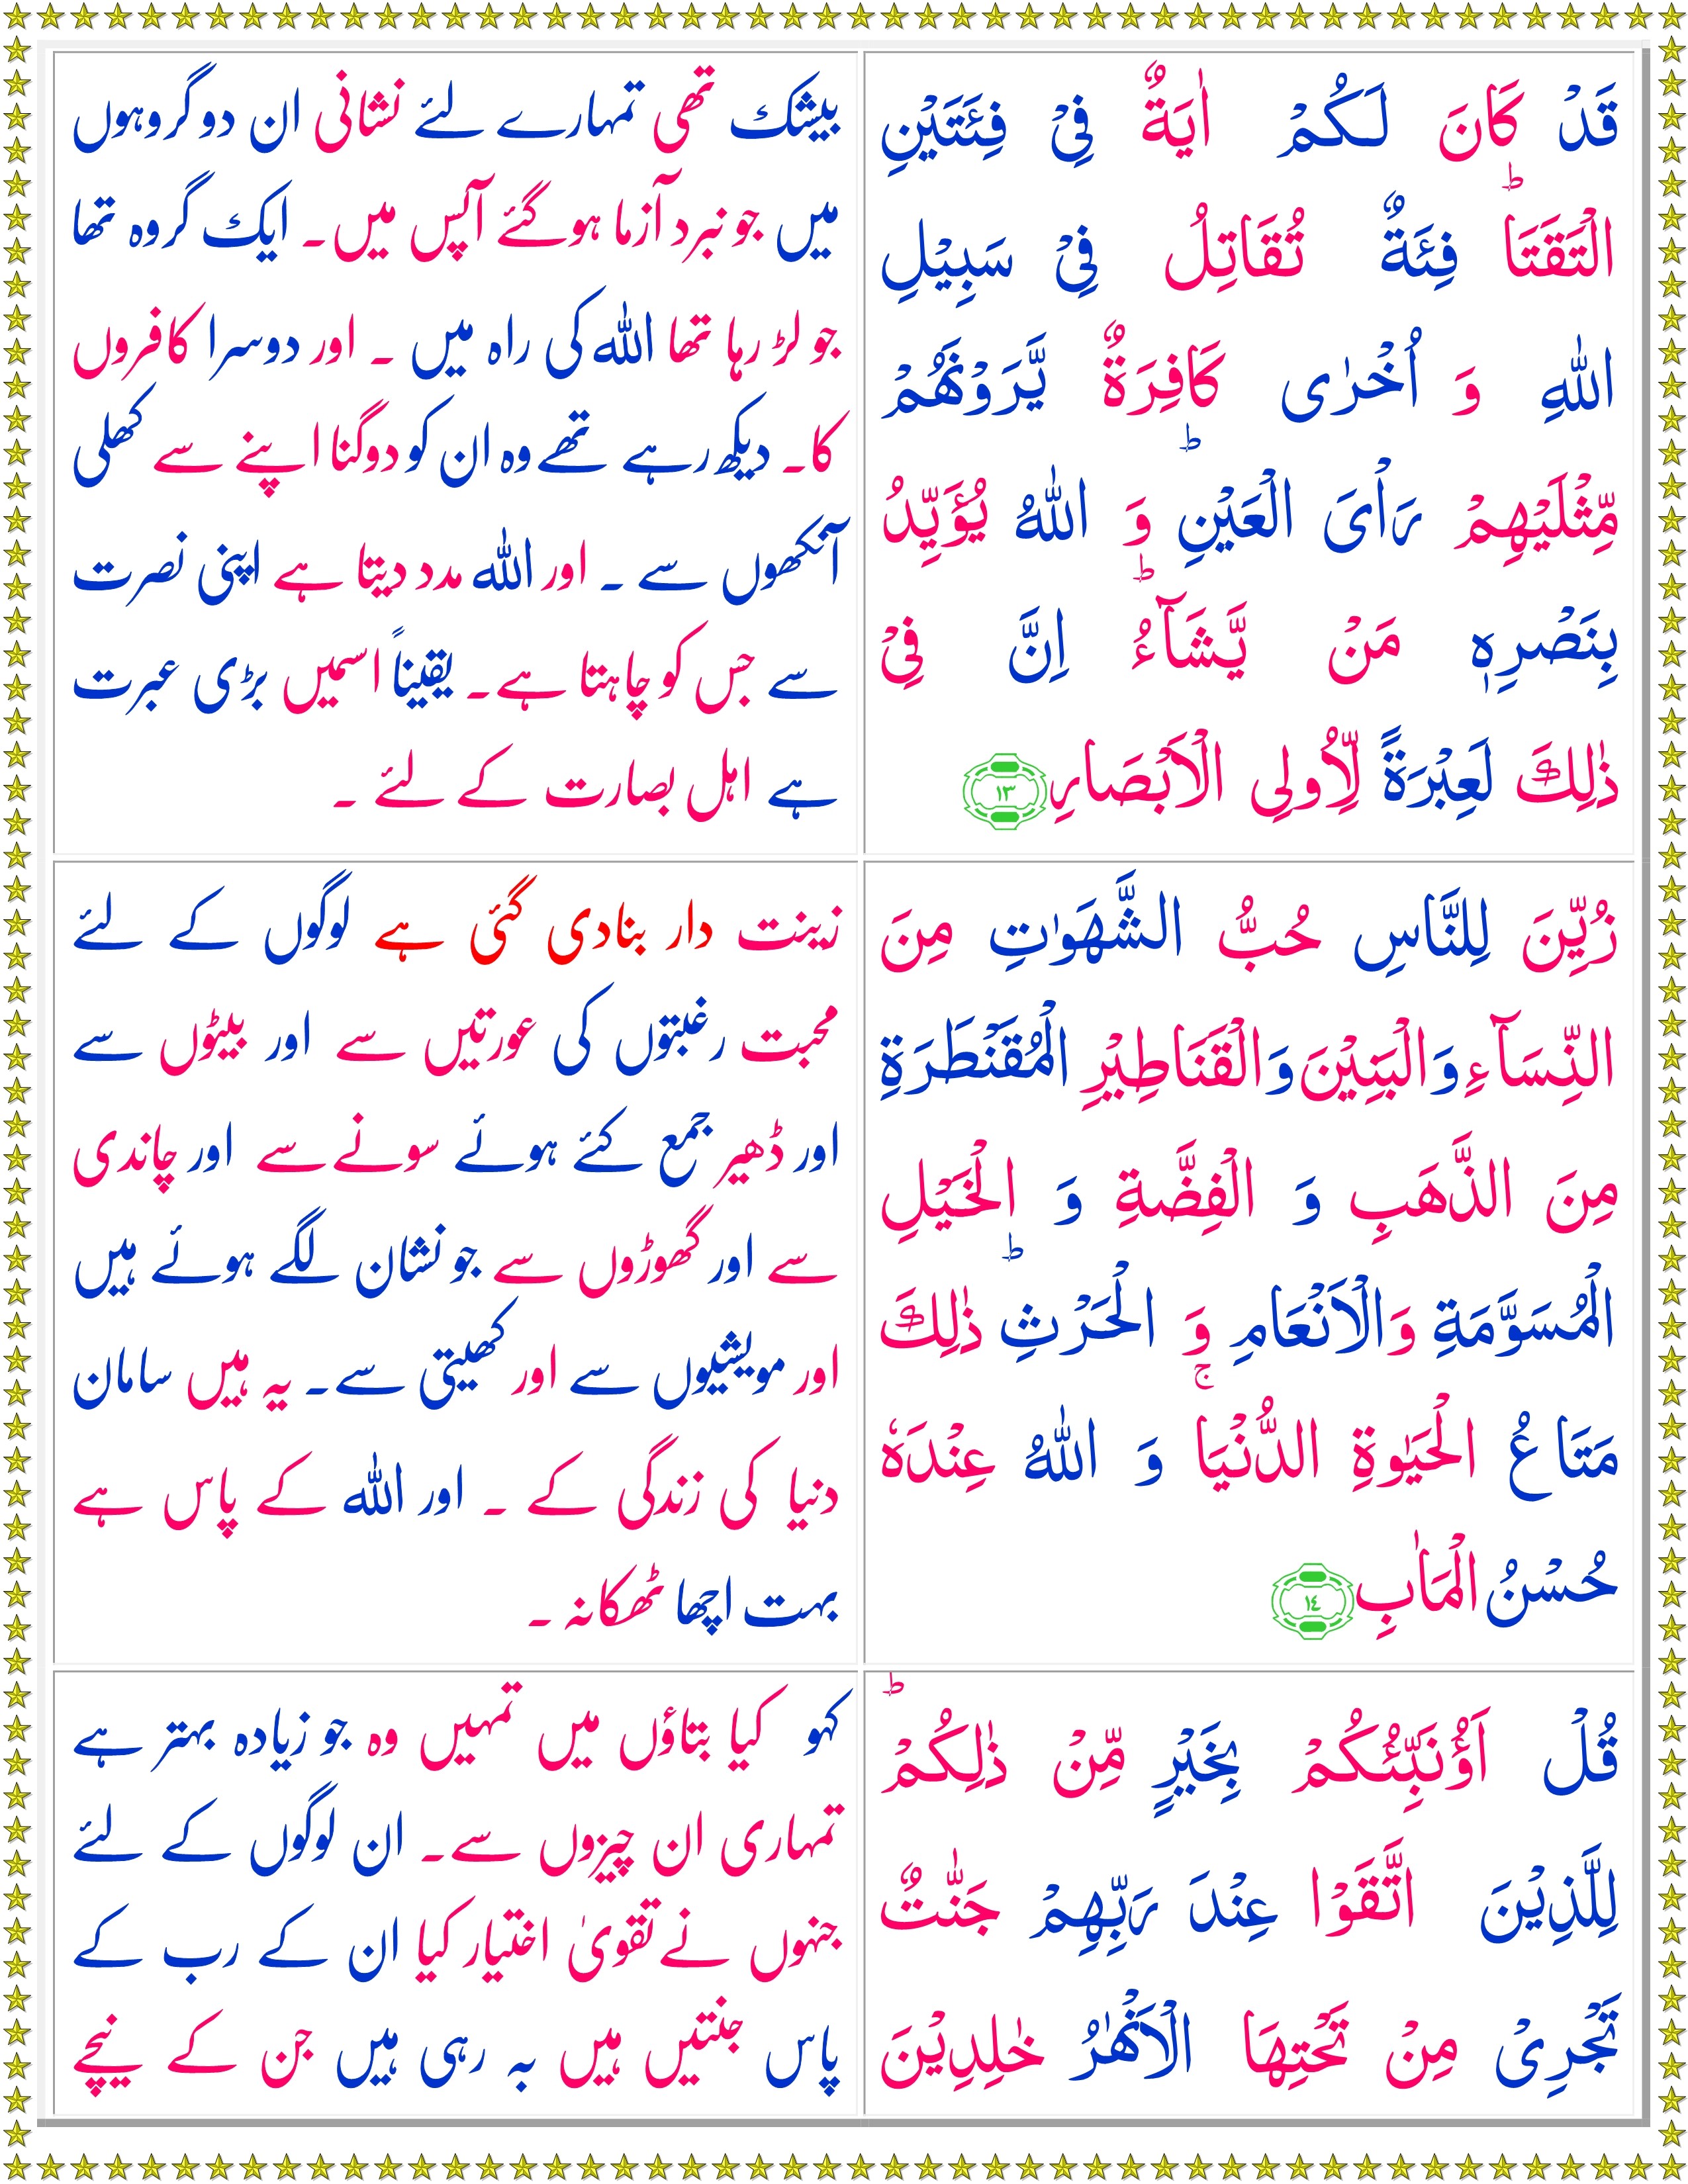 Surah Al-Imran (Urdu) - Quran o Sunnat